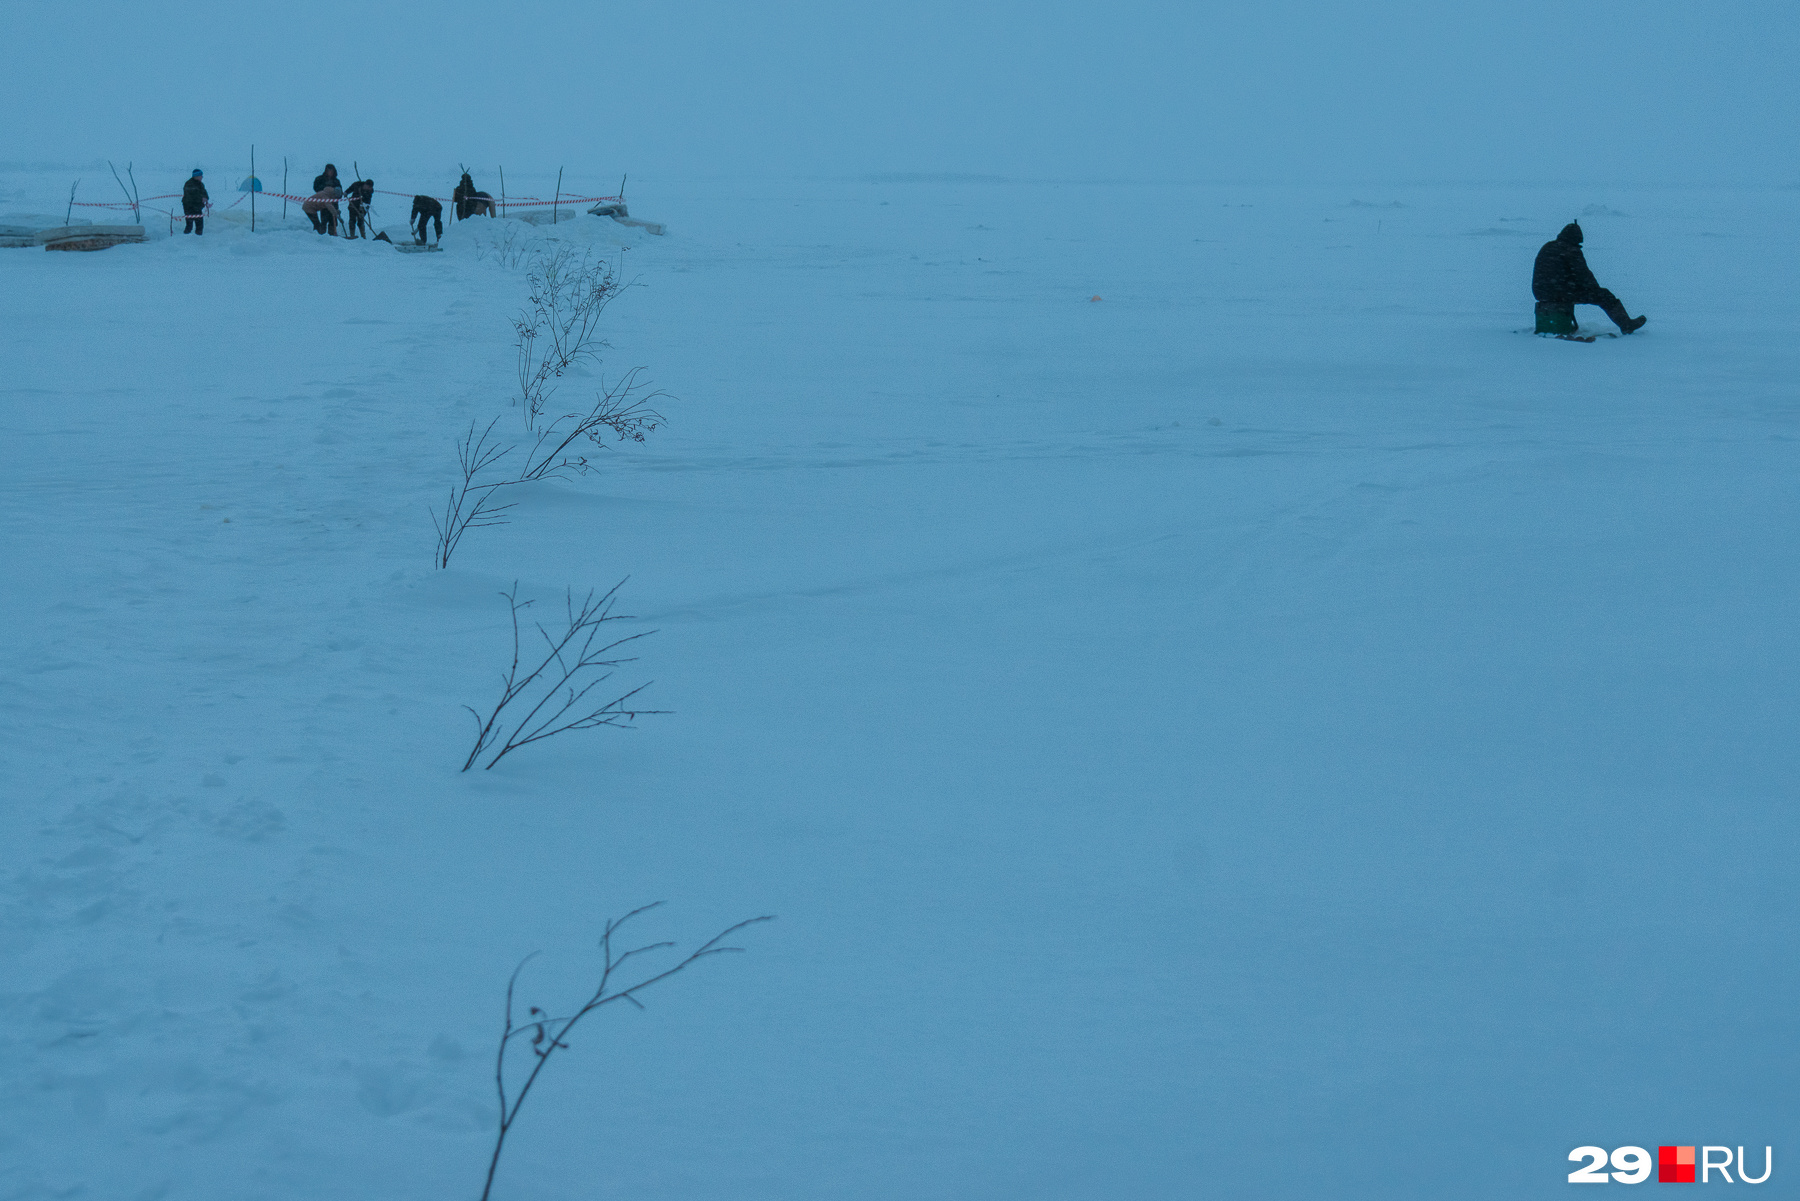 Путь к проруби обозначен веточками, а рядом сидели рыбаки — у них свой интерес на зимней Двине